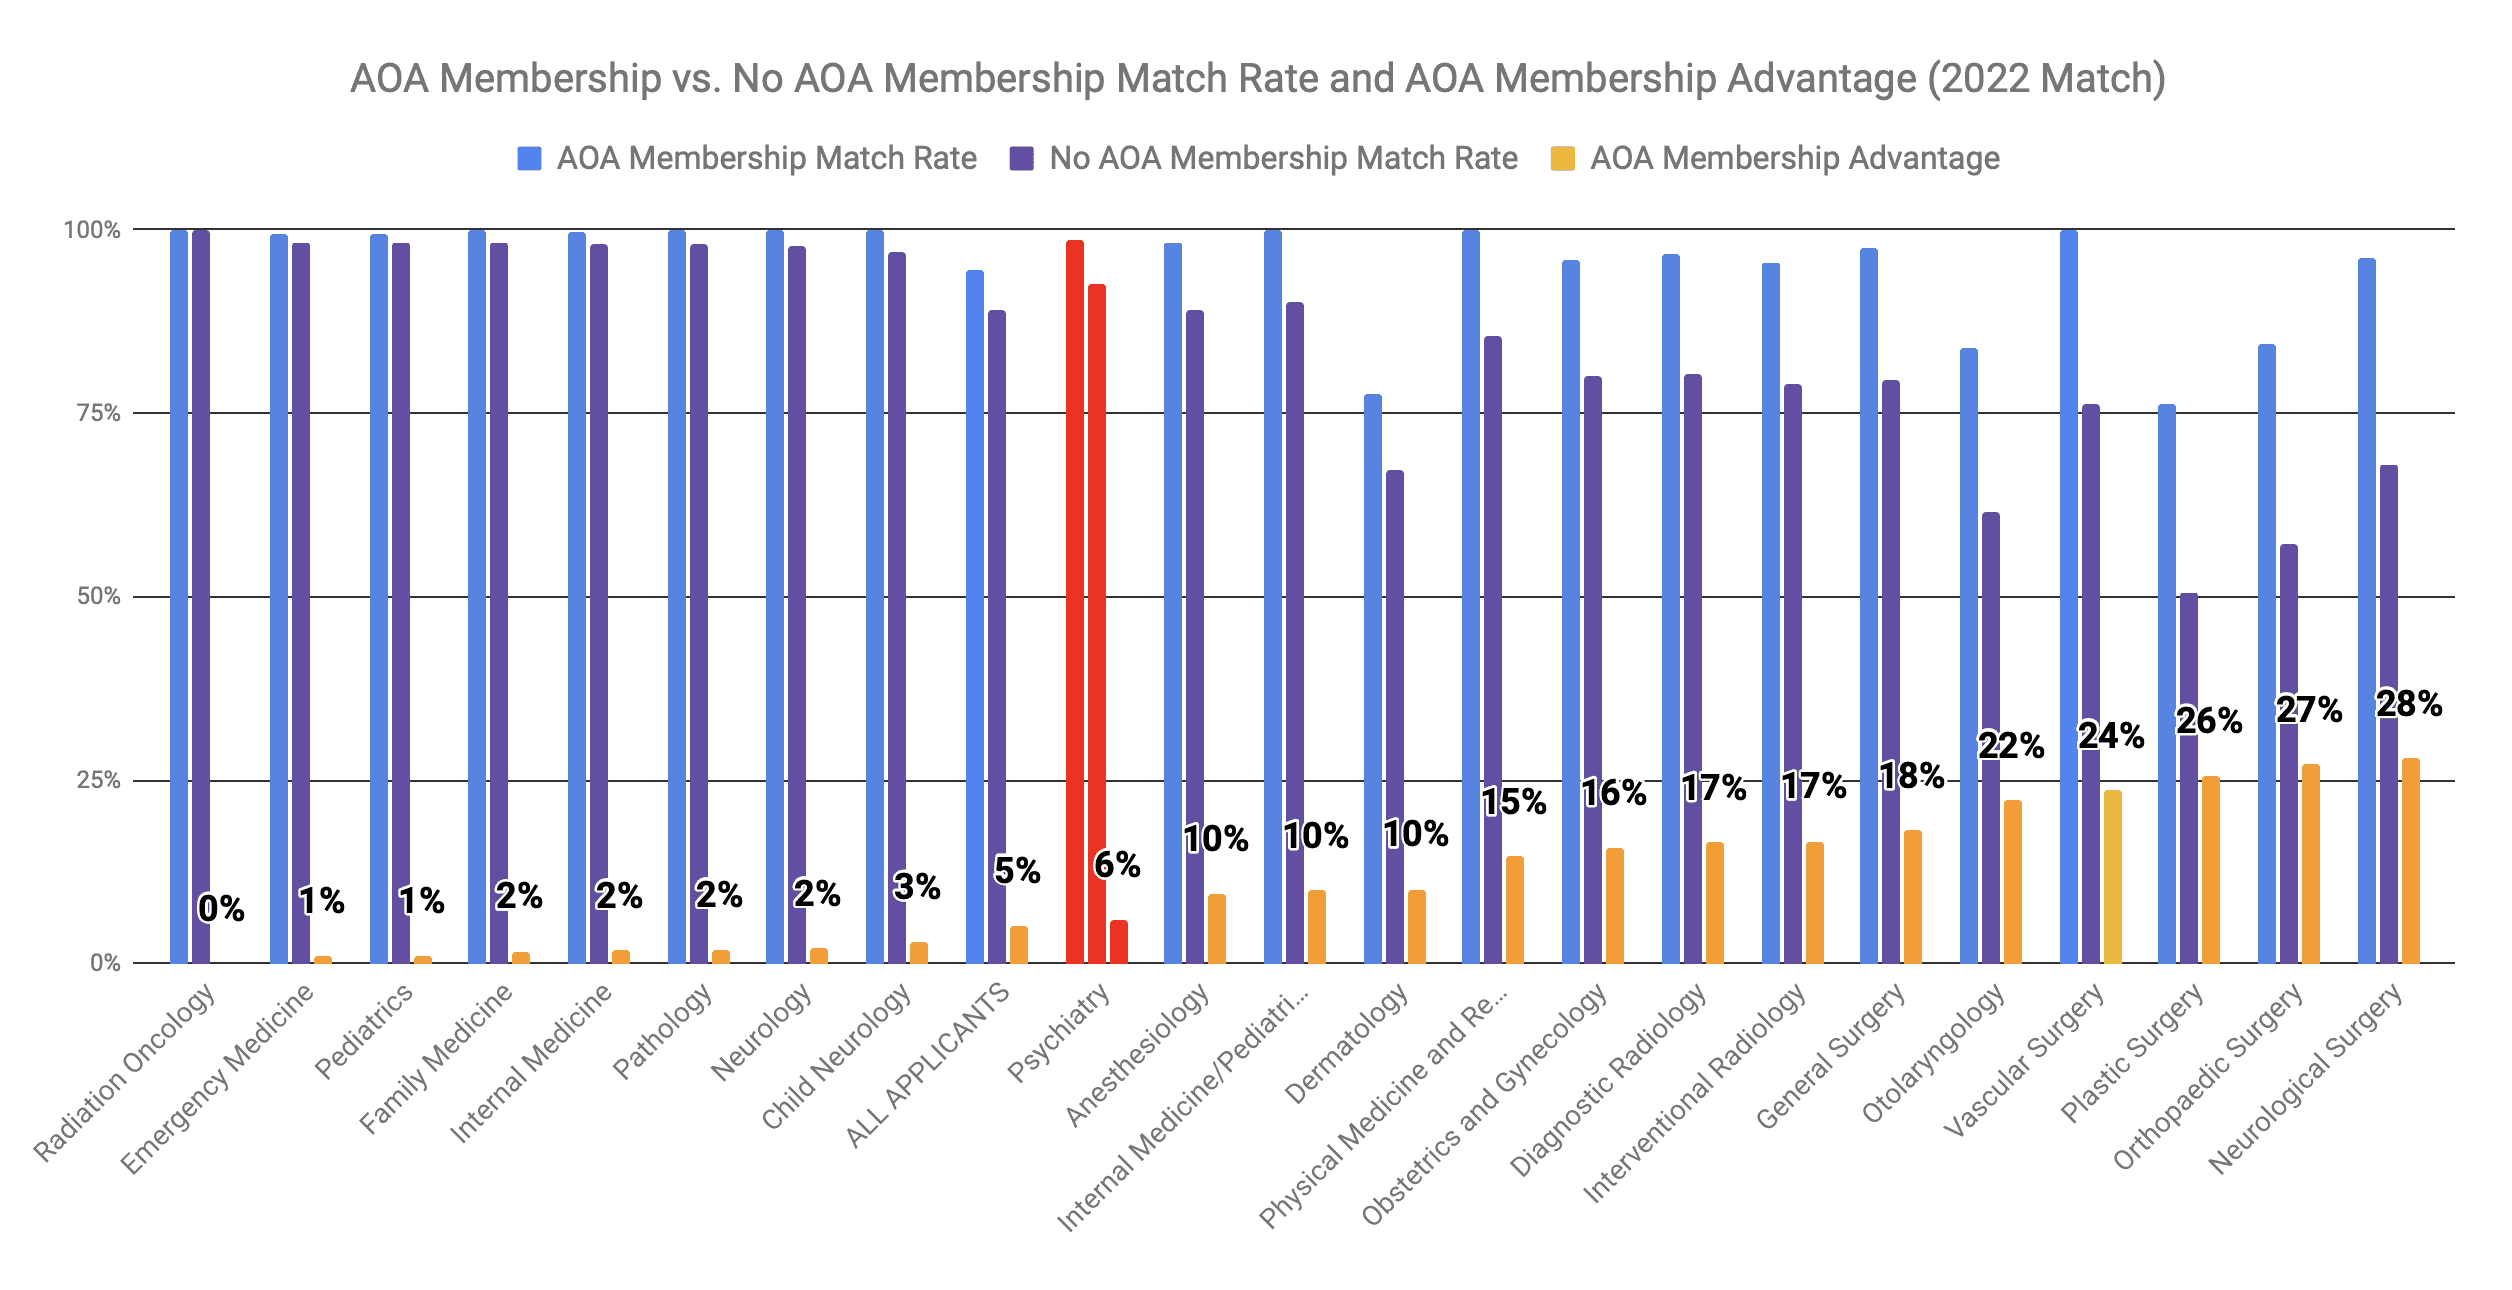 AOA Membership Advantage for Psychiatry 2022